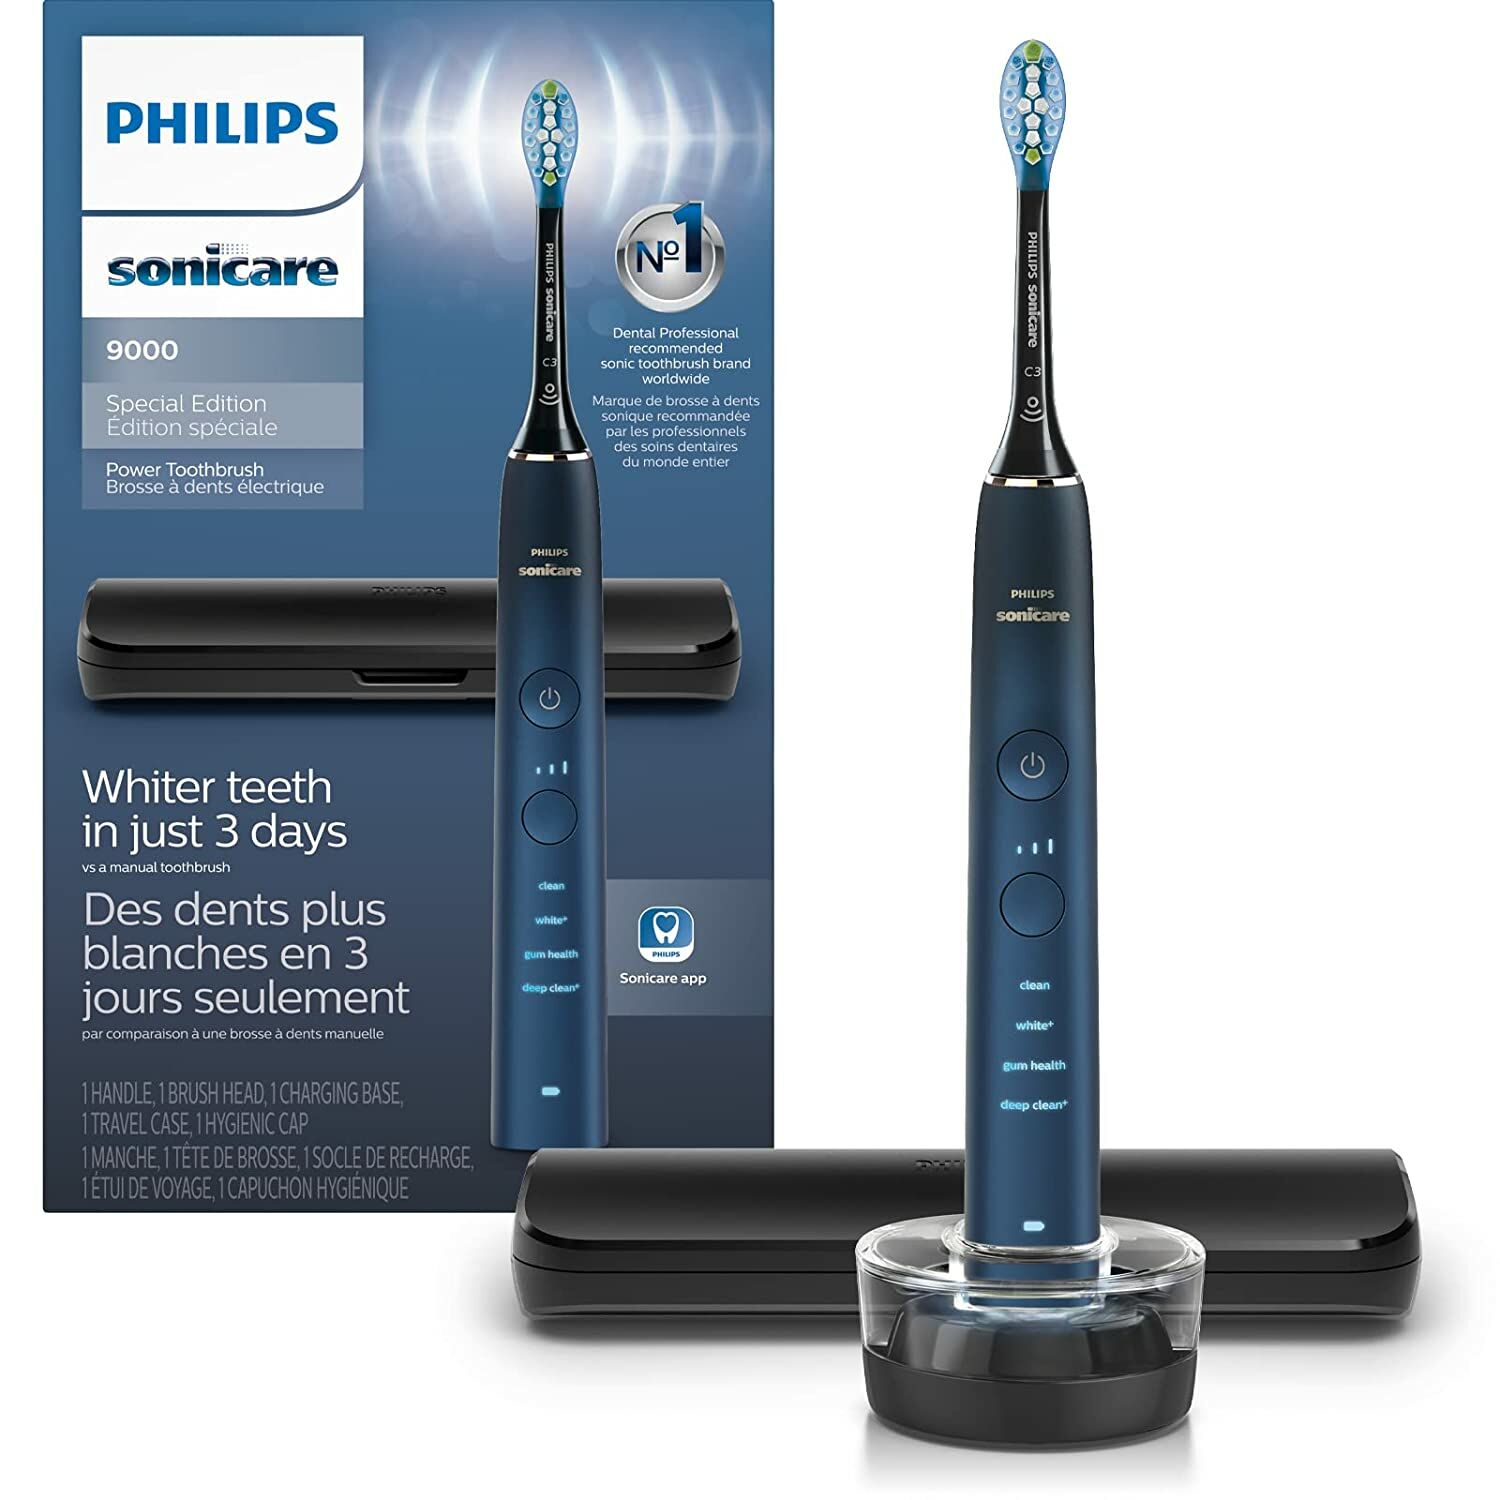 Philips Sonicare 9000 Özel Sürüm Şarj Edilebilir Diş Fırçası Mavi